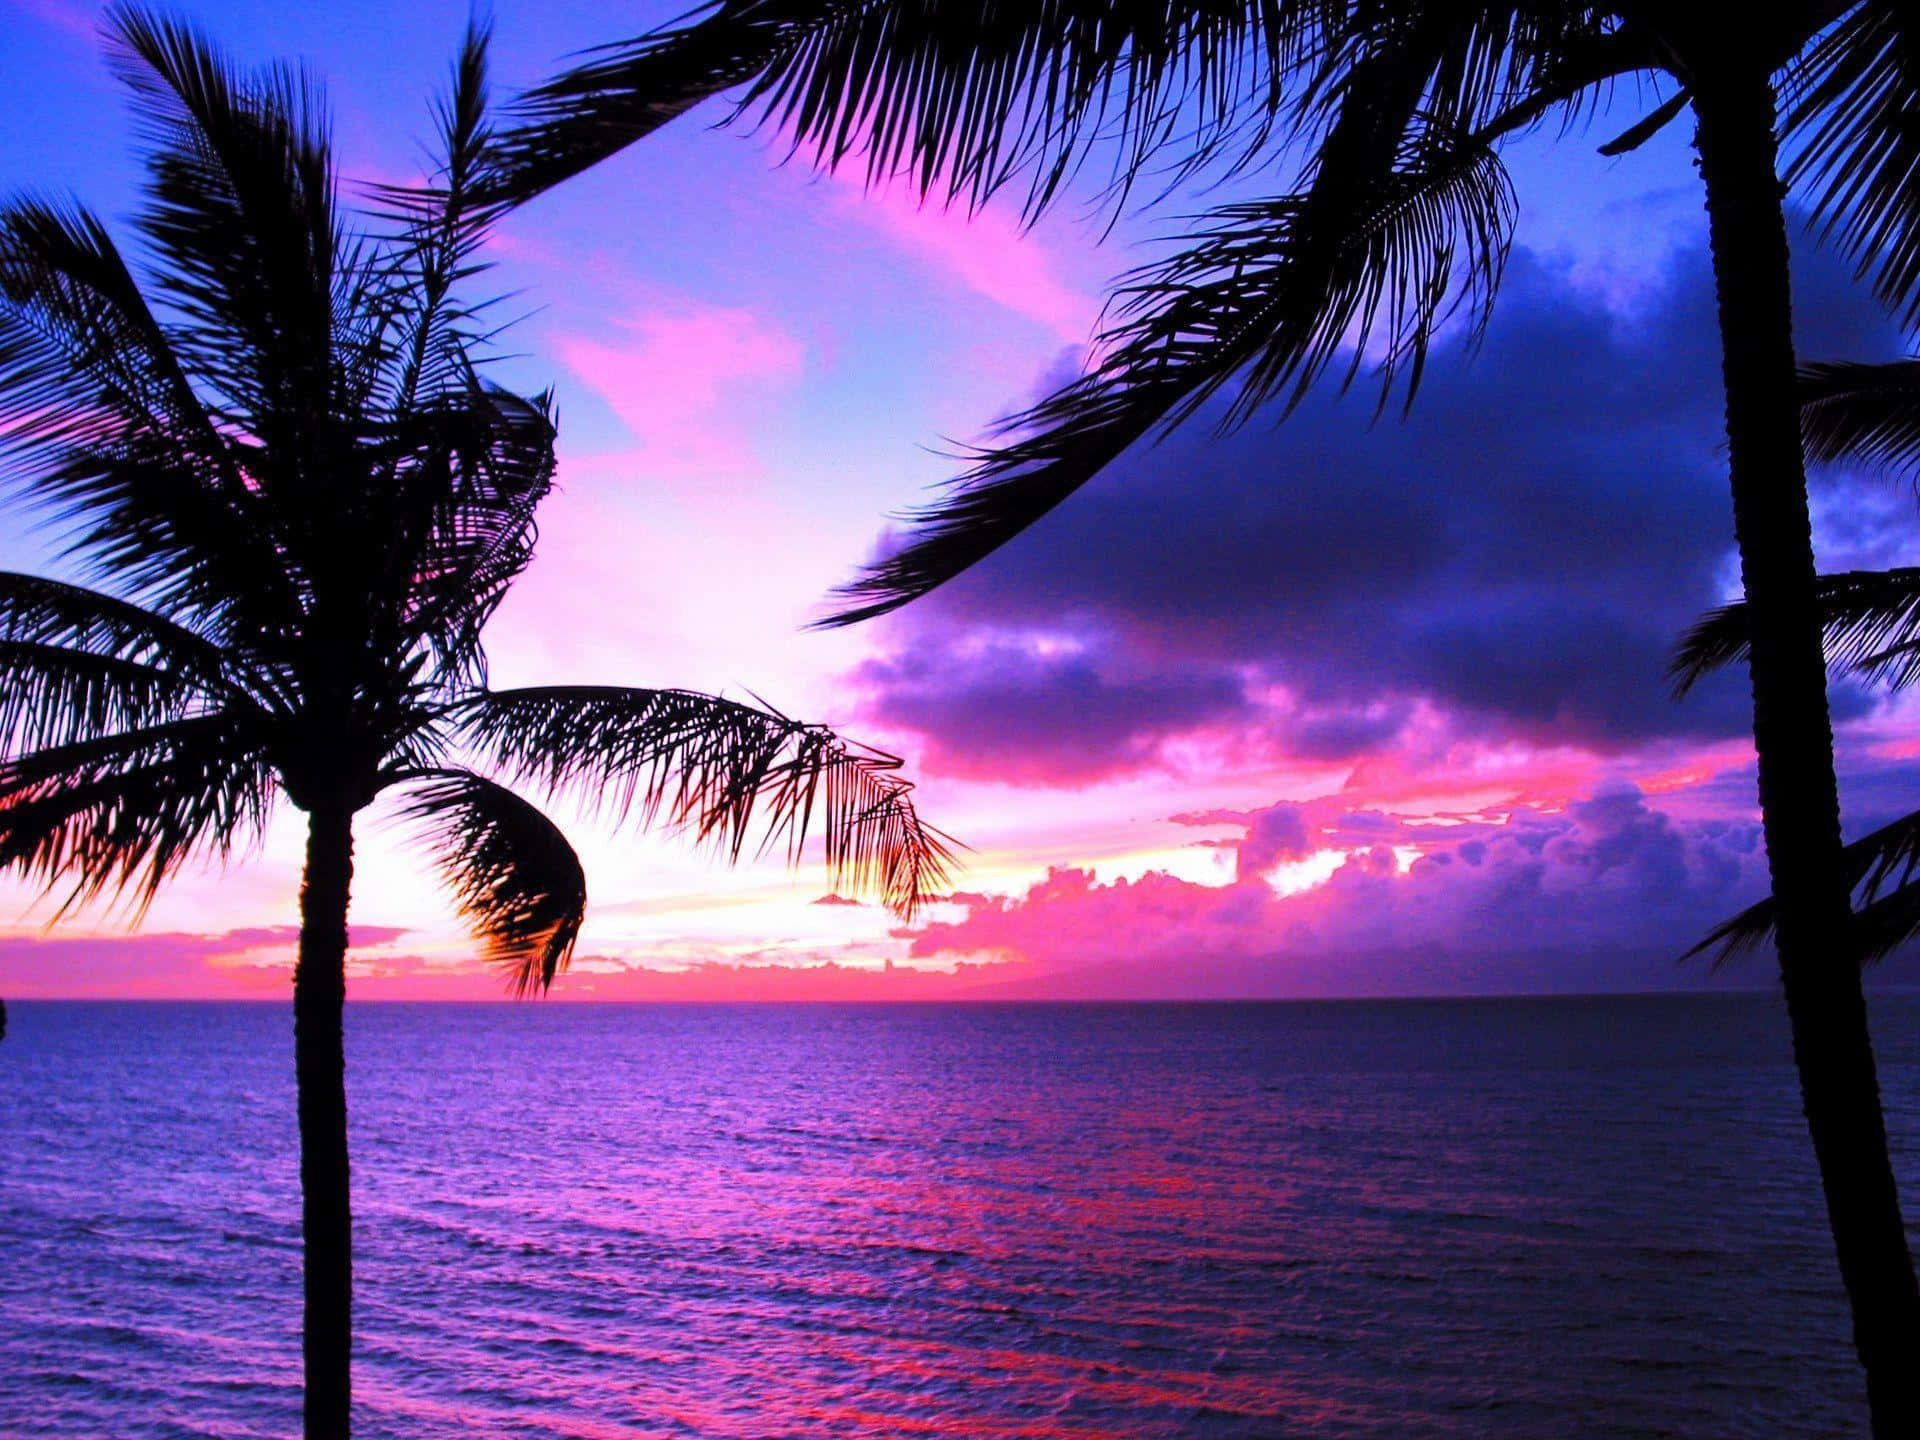 Disfrutade La Impresionante Vista De Una Puesta De Sol En Hawái Con Tonos Rosados Y Morados. Fondo de pantalla